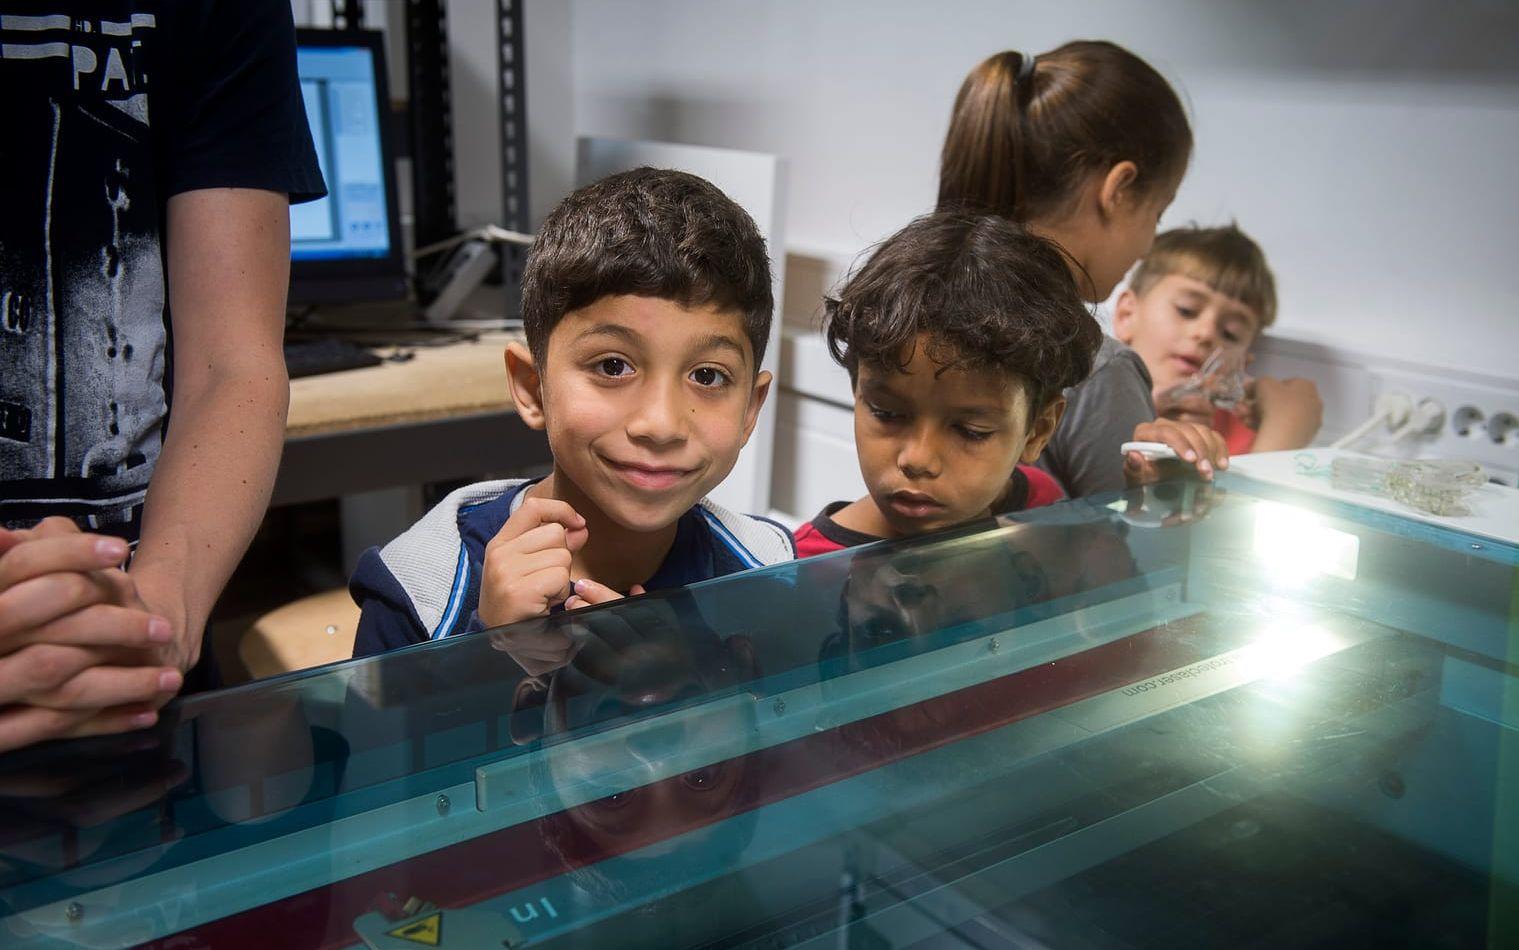 NYFIKNA. Barnen är nyfikna på att se resultatet efter att laserskrivaren har gjort sitt jobb. Bild: Jörgen Alström